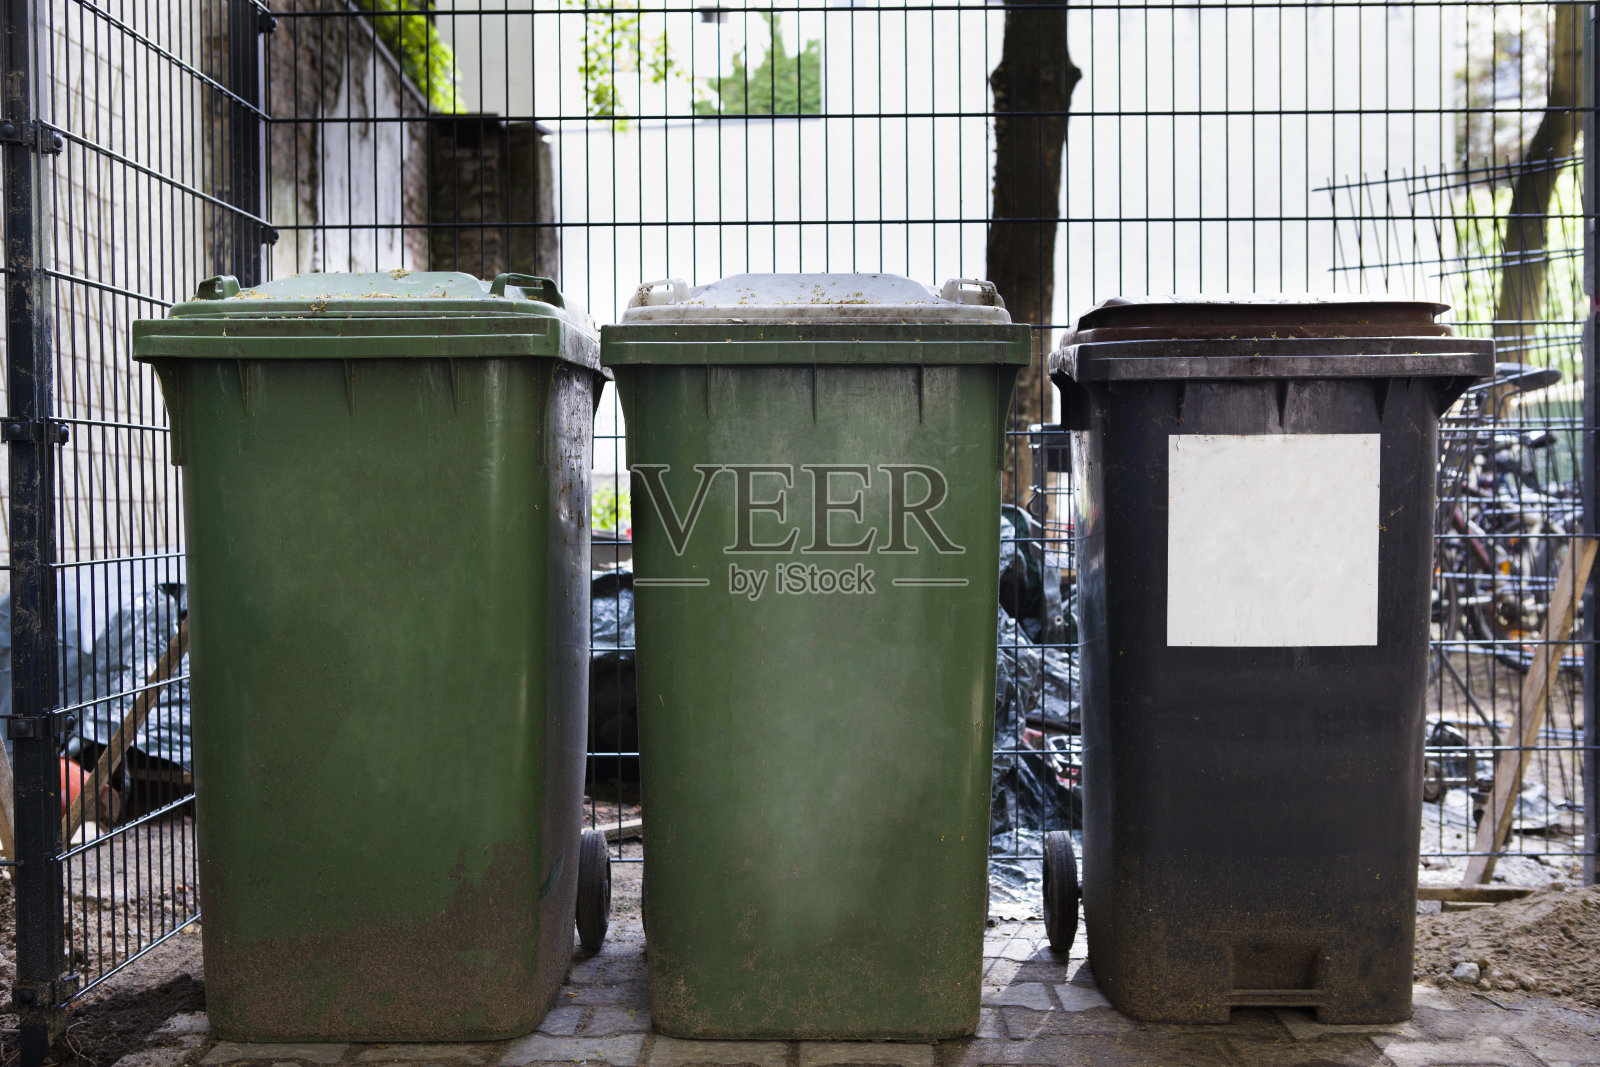 垃圾容器，垃圾容器的图像，垃圾容器排成一行照片摄影图片